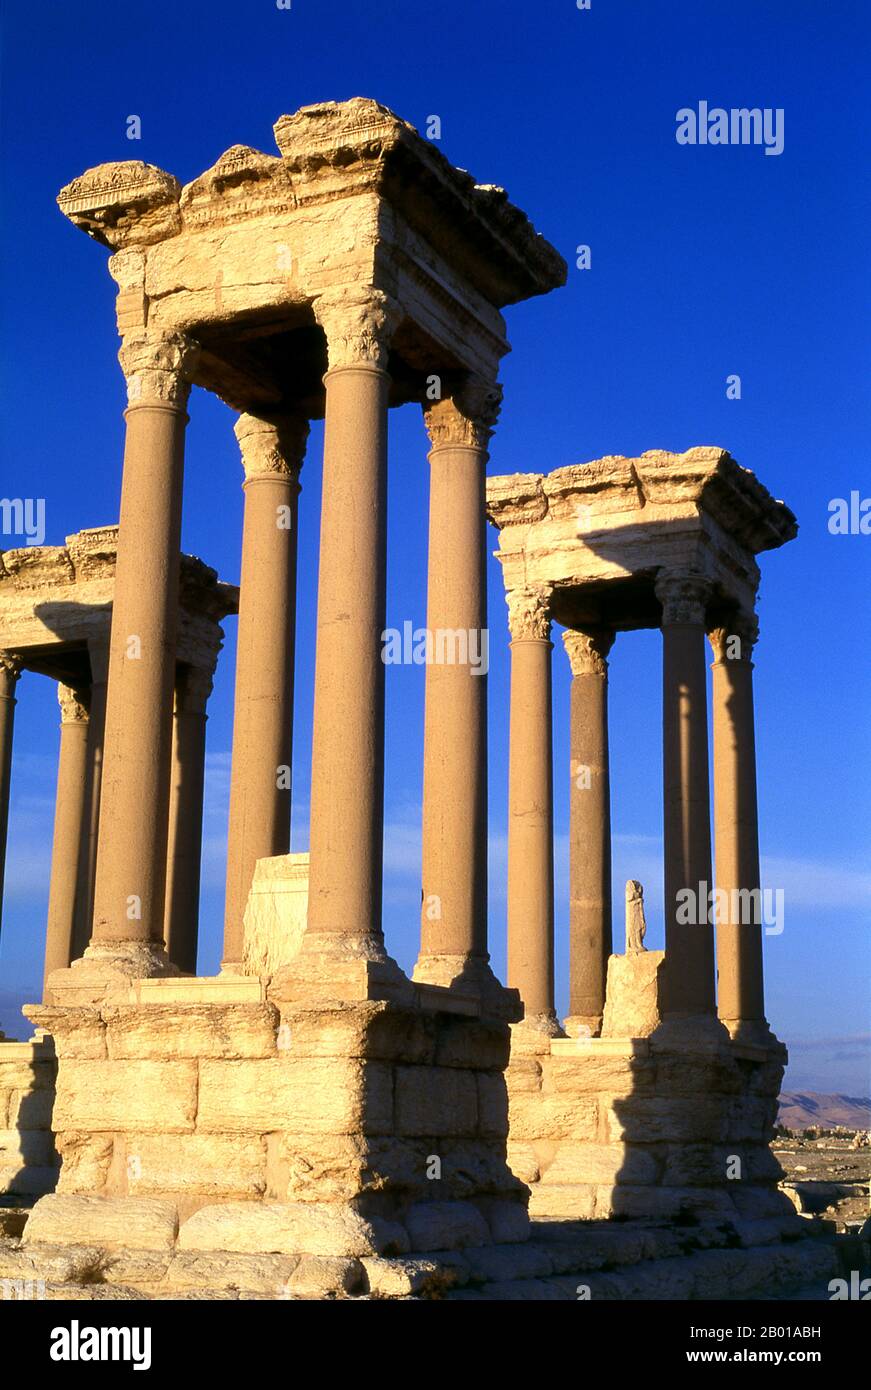 Siria: Il Tetrapylon (quattro colonne), Palmyra. Palmyra era un'antica città in Siria. Era una città importante nella Siria centrale, situata in un'oasi 215 km a nord-est di Damasco e 180 km a sud-ovest dell'Eufrate a Deir ez-Zor. Era stata a lungo una città carovana vitale per i viaggiatori che attraversavano il deserto siriano ed era conosciuta come la sposa del deserto. Il primo riferimento documentato alla città con il suo nome semitico Tadmor, Tadmur o Tudmur (che significa 'la città che si respinge' in Amorite e 'la città indomitabile' in Aramaico) è registrato in compresse babilonesi trovati in Mari. Foto Stock